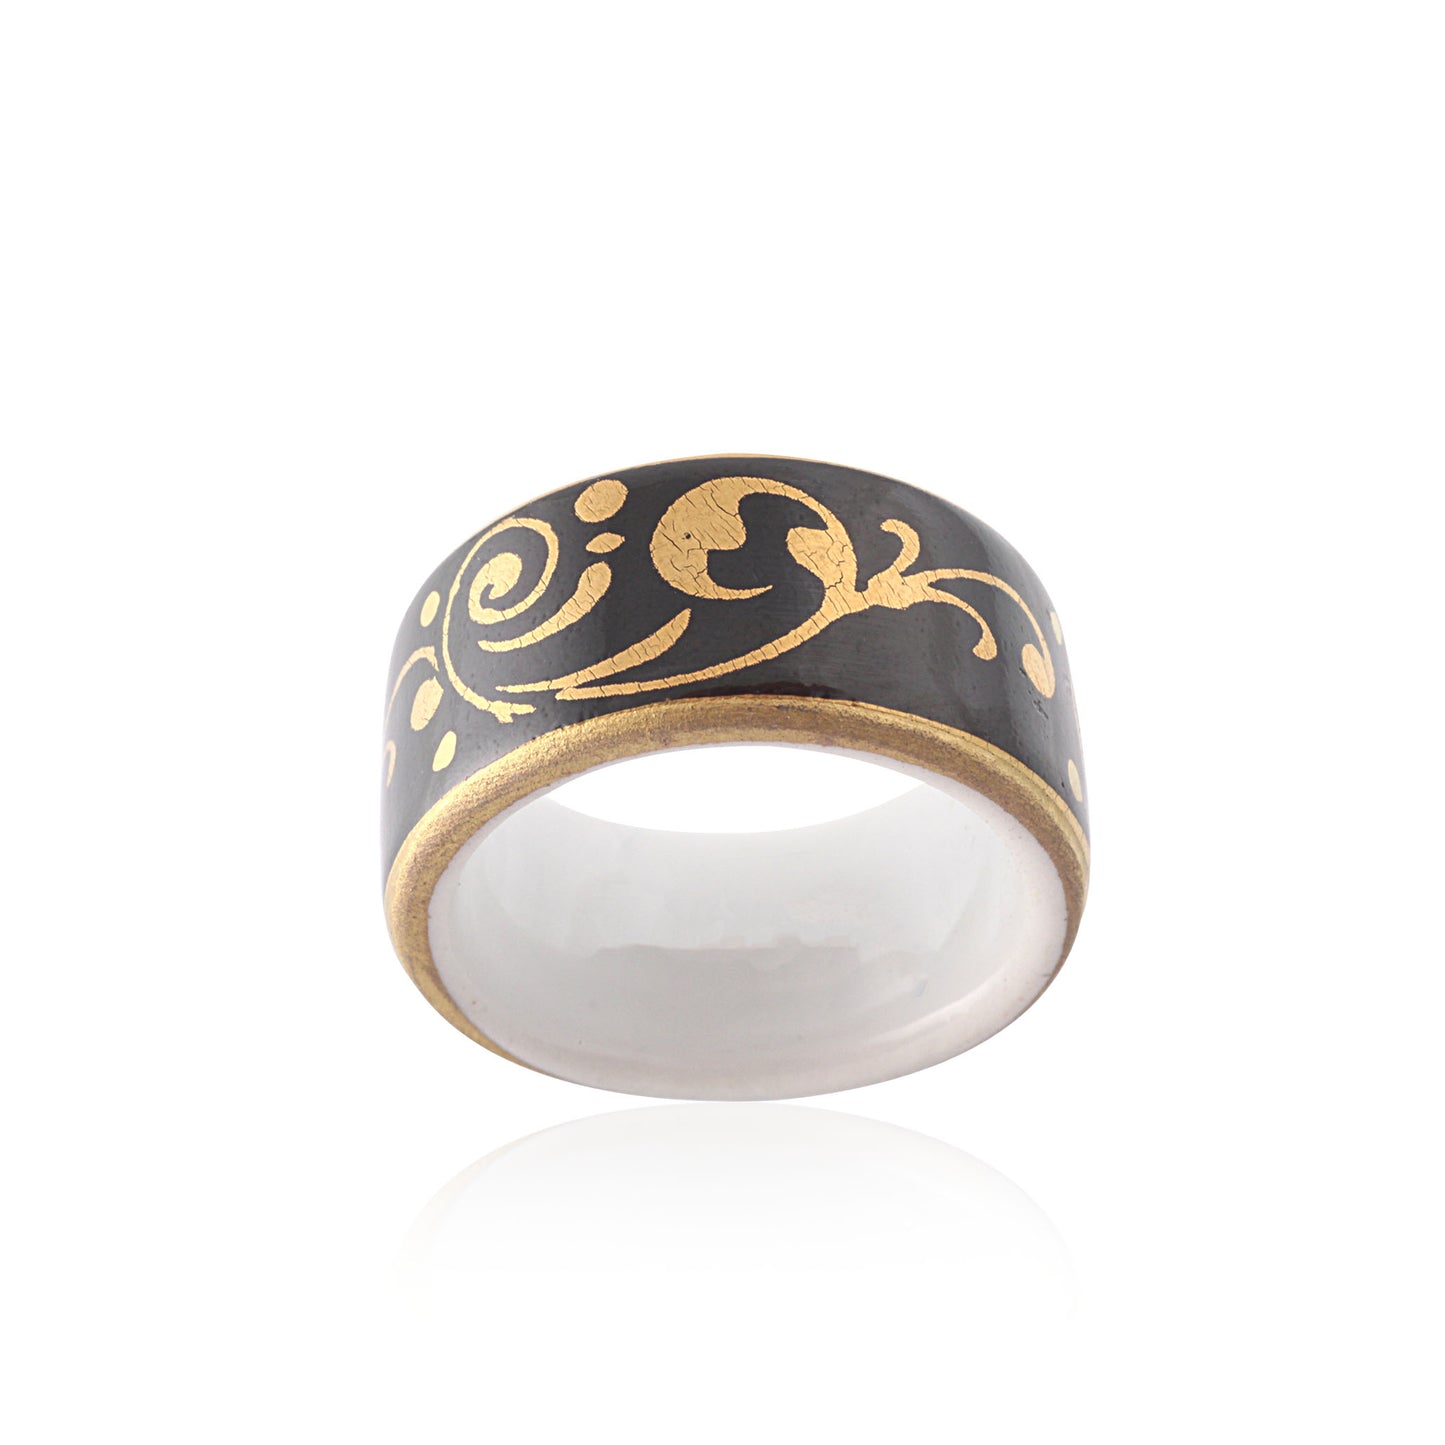 BAROQUE black gold plated fine porcelain ring